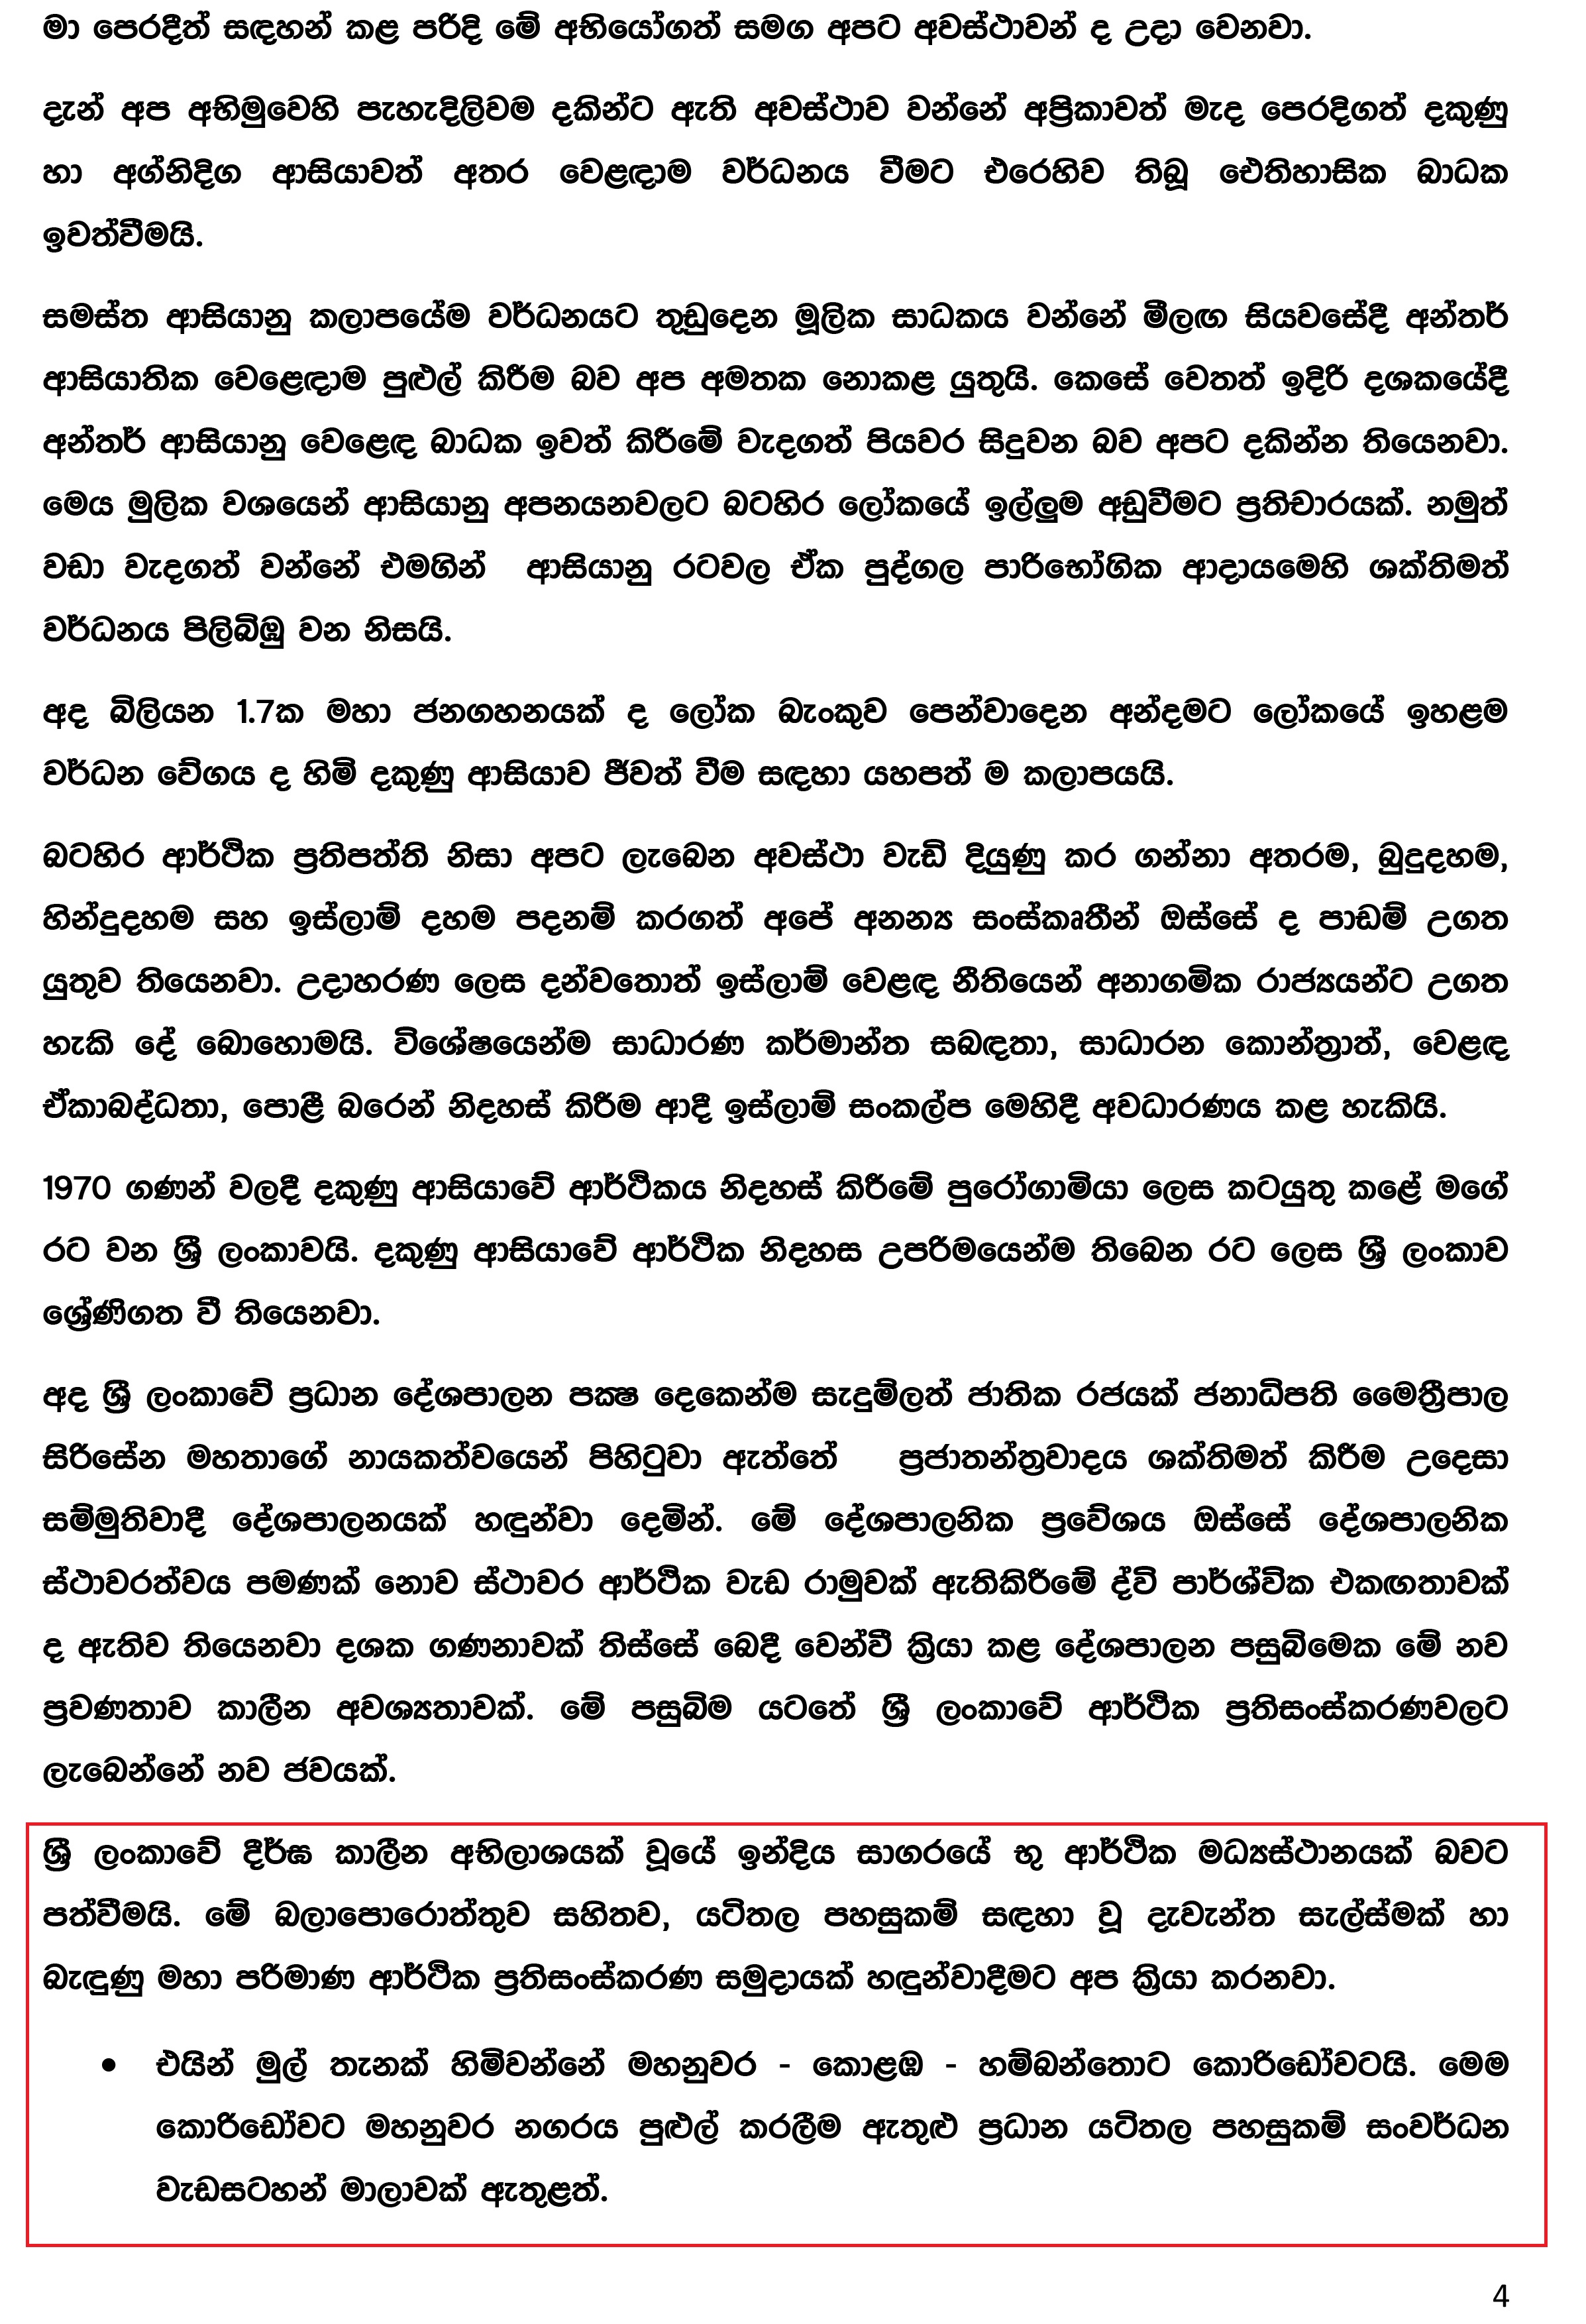 Press Release (1) - August 02_2016 (Sinhala)-4